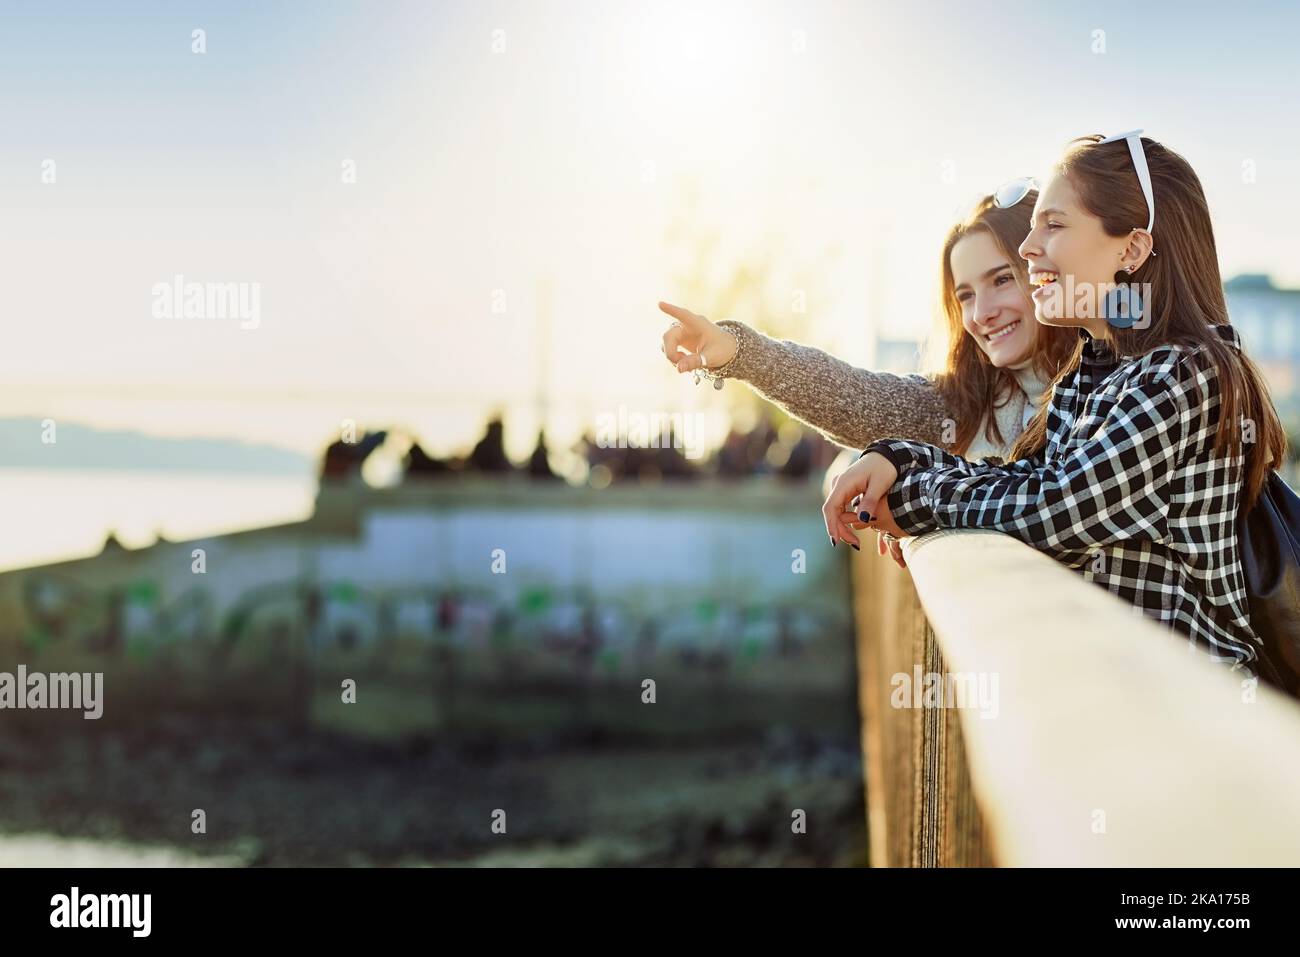 Eine attraktive junge Frau, die ihrem Freund etwas zeigt, während sie auf einem Aussichtspunkt steht. Stockfoto